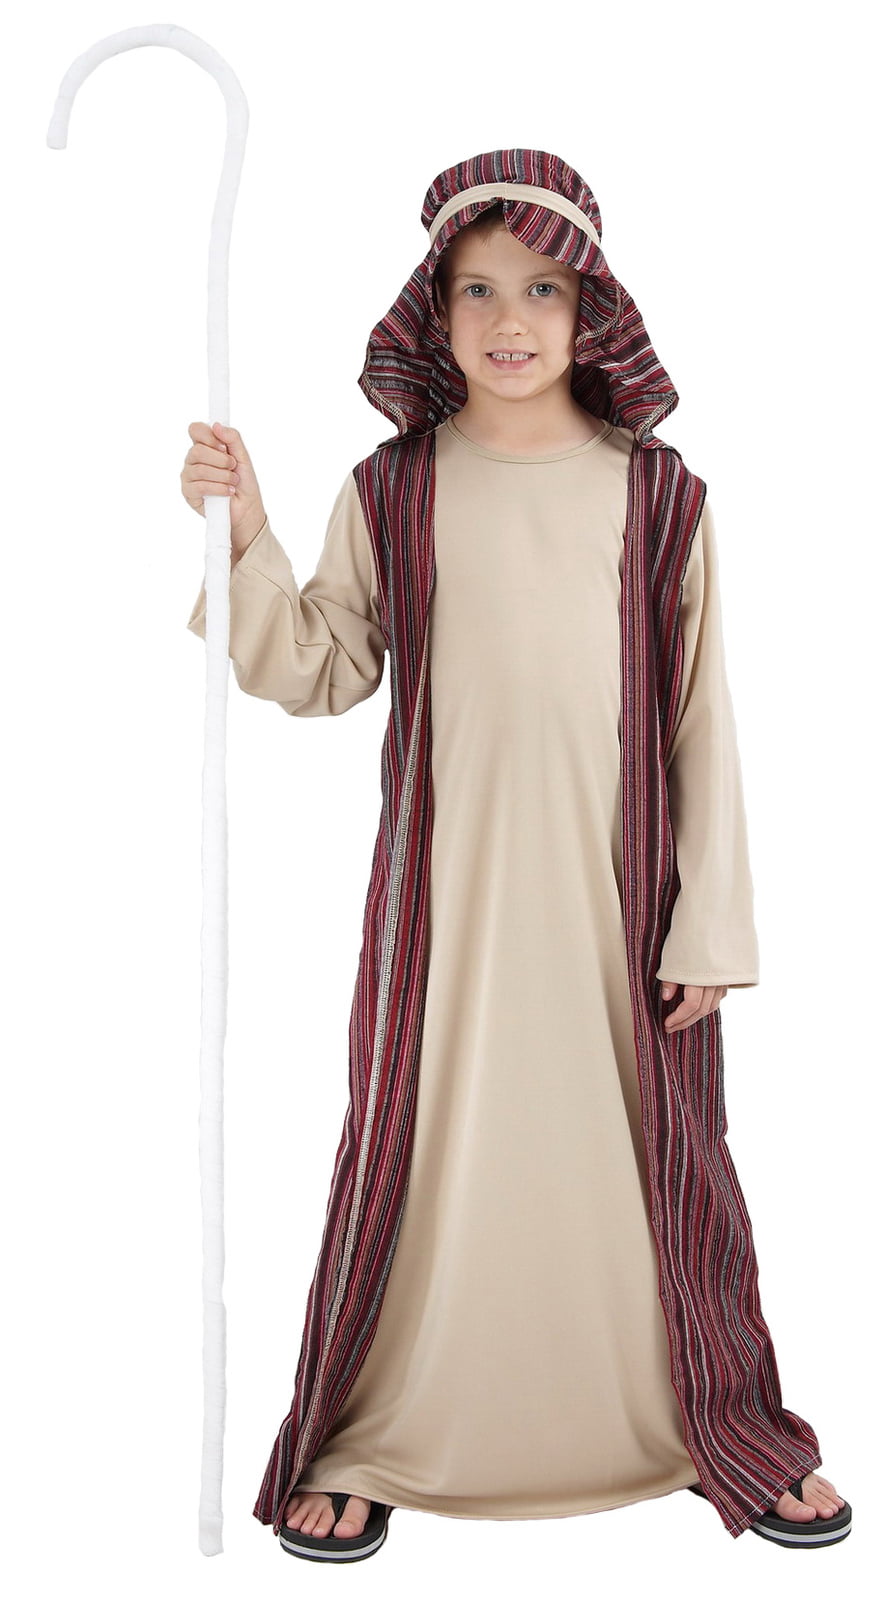 Shepherd Costume, Child - The Costumery